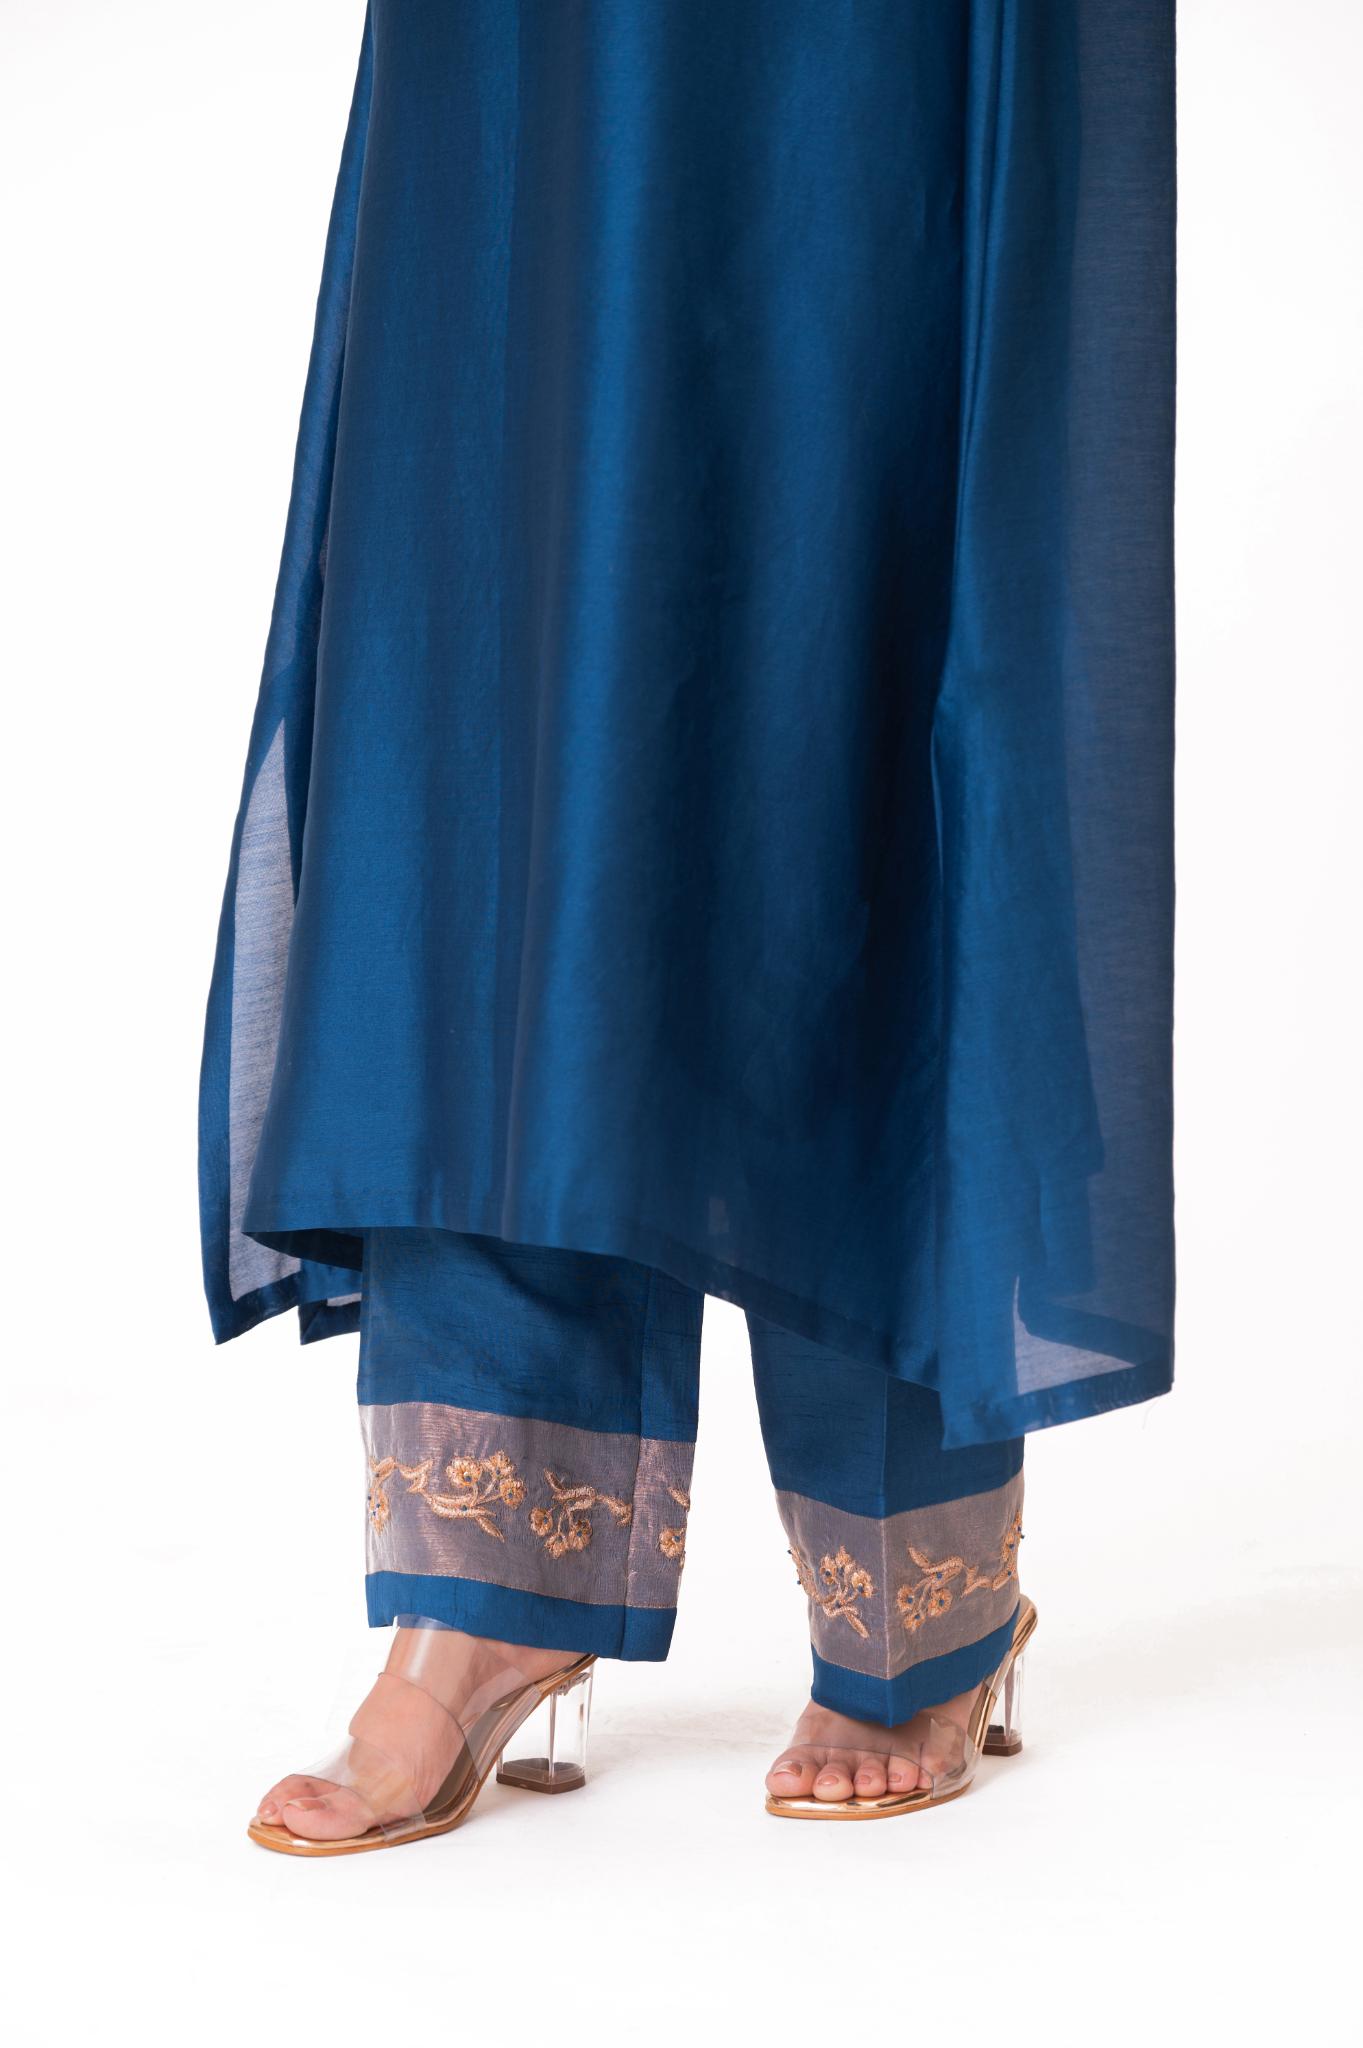 Tissue Patch Work Dupatta Kurta Set - Royal Blue - CiceroniKurta Set, Festive wearBhavik Shah